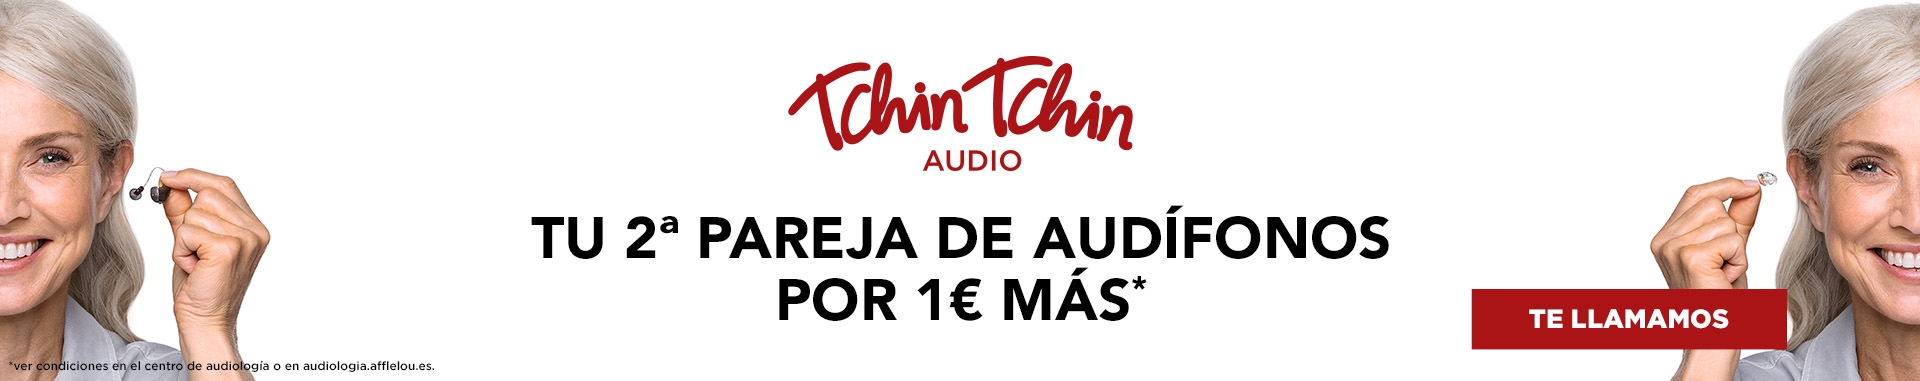 Tchin Tchin Audio: tu 2ª pareja de audífonos por 1€ más*